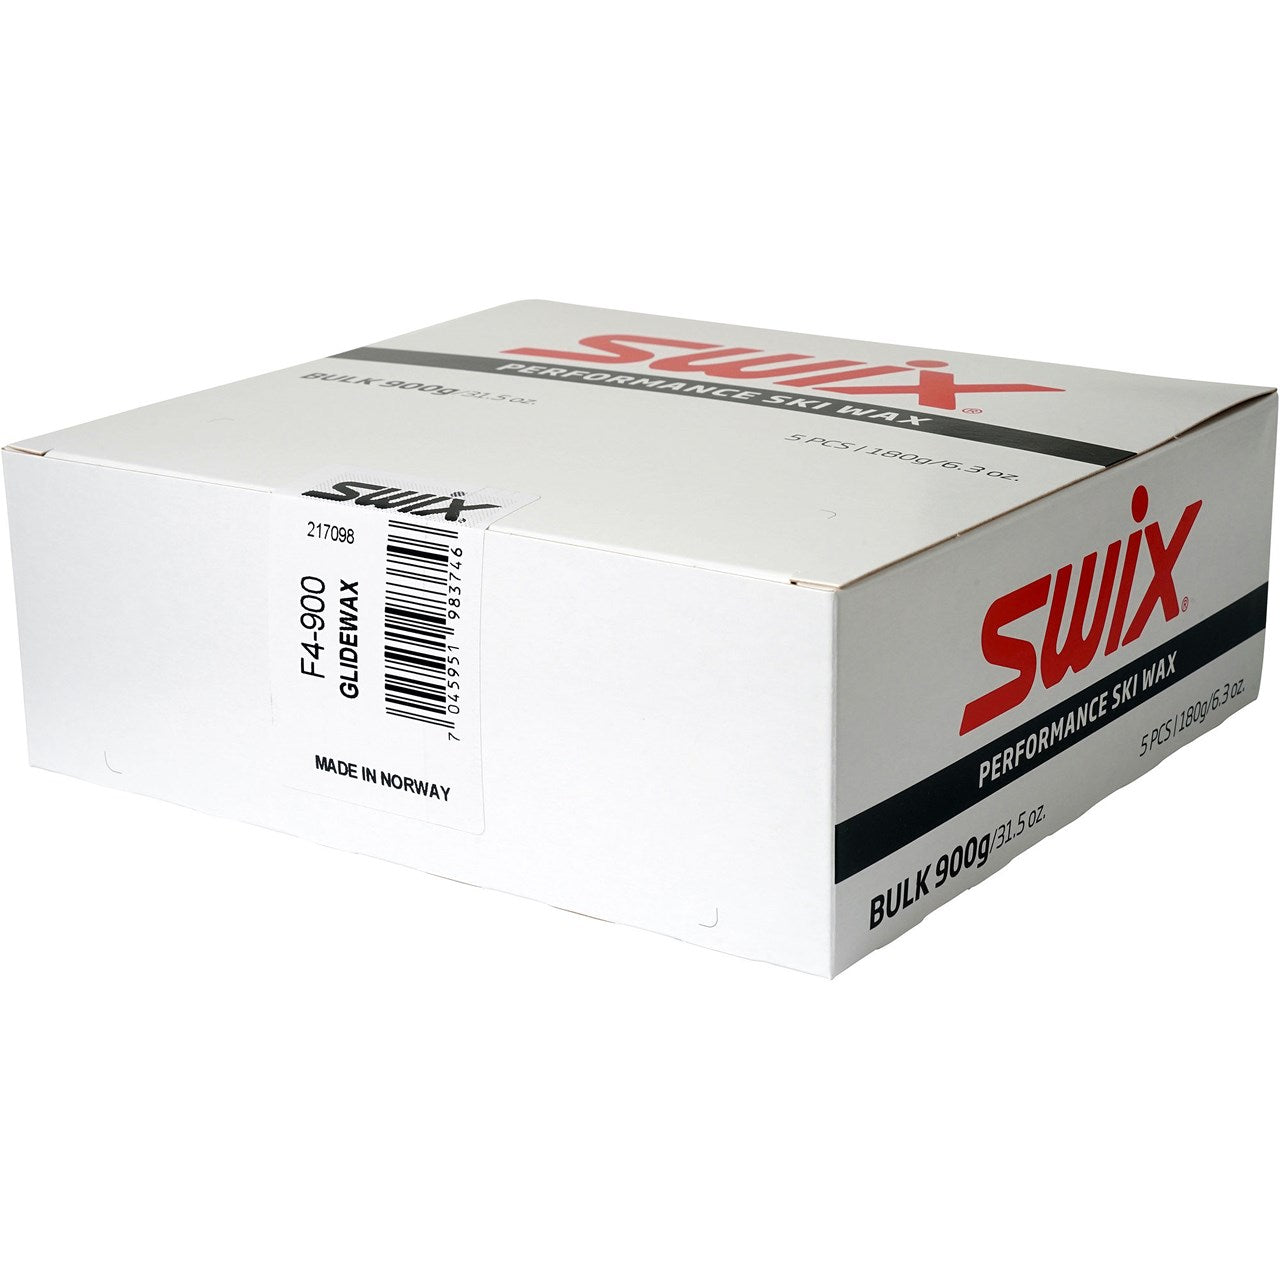 Swix F4 /universal Glide Wax 900g Bulk SKI & SNOWBOARD WAX Swix   